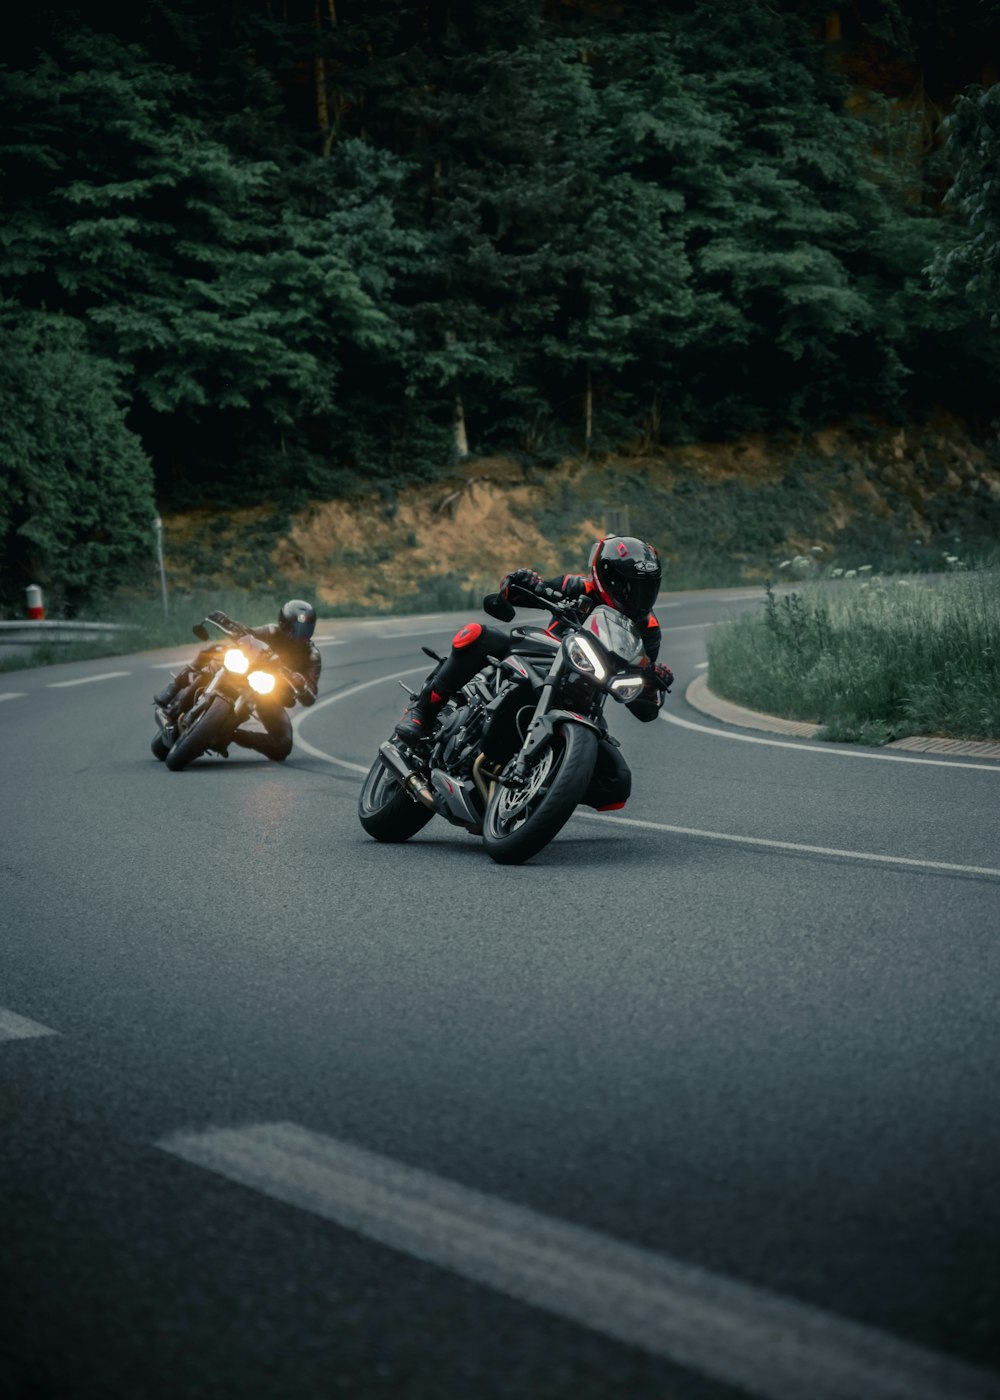 Un couple de personnes conduisant des motos sur une route sinueuse